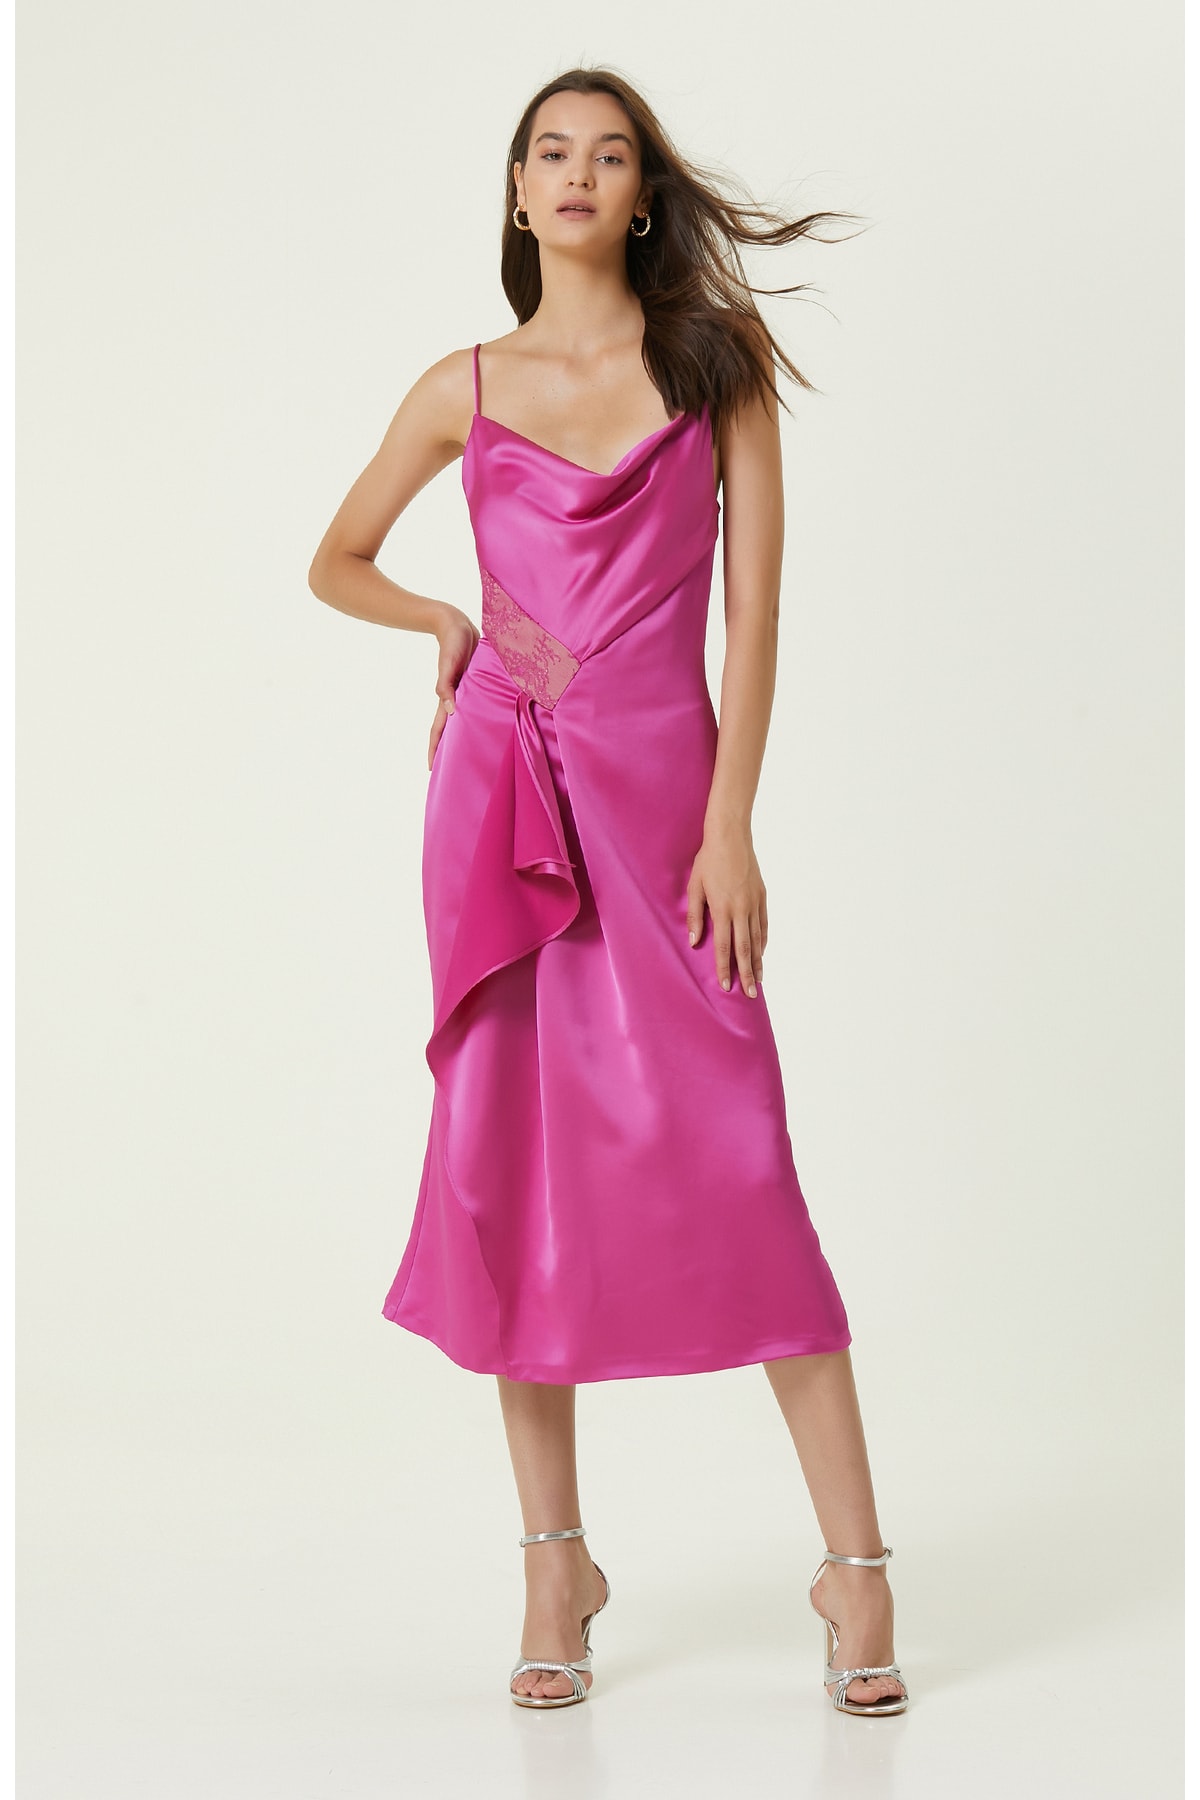 цена Длинное вечернее платье цвета фуксии Network, розовый